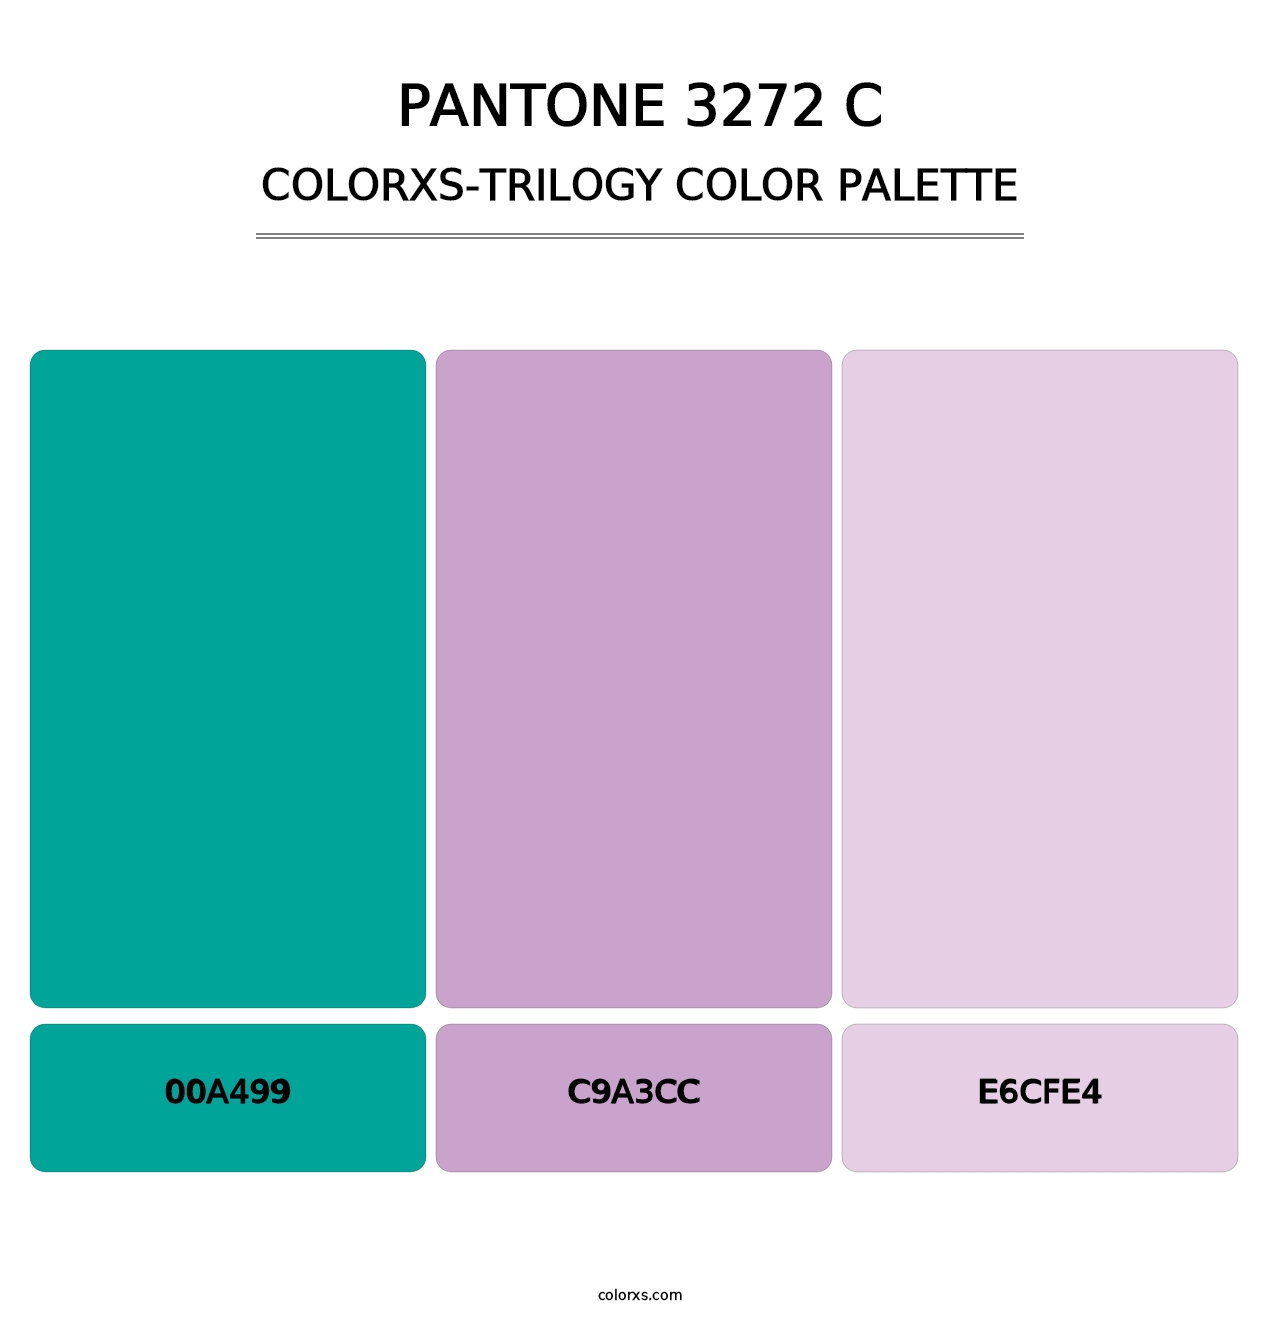 PANTONE 3272 C - Colorxs Trilogy Palette